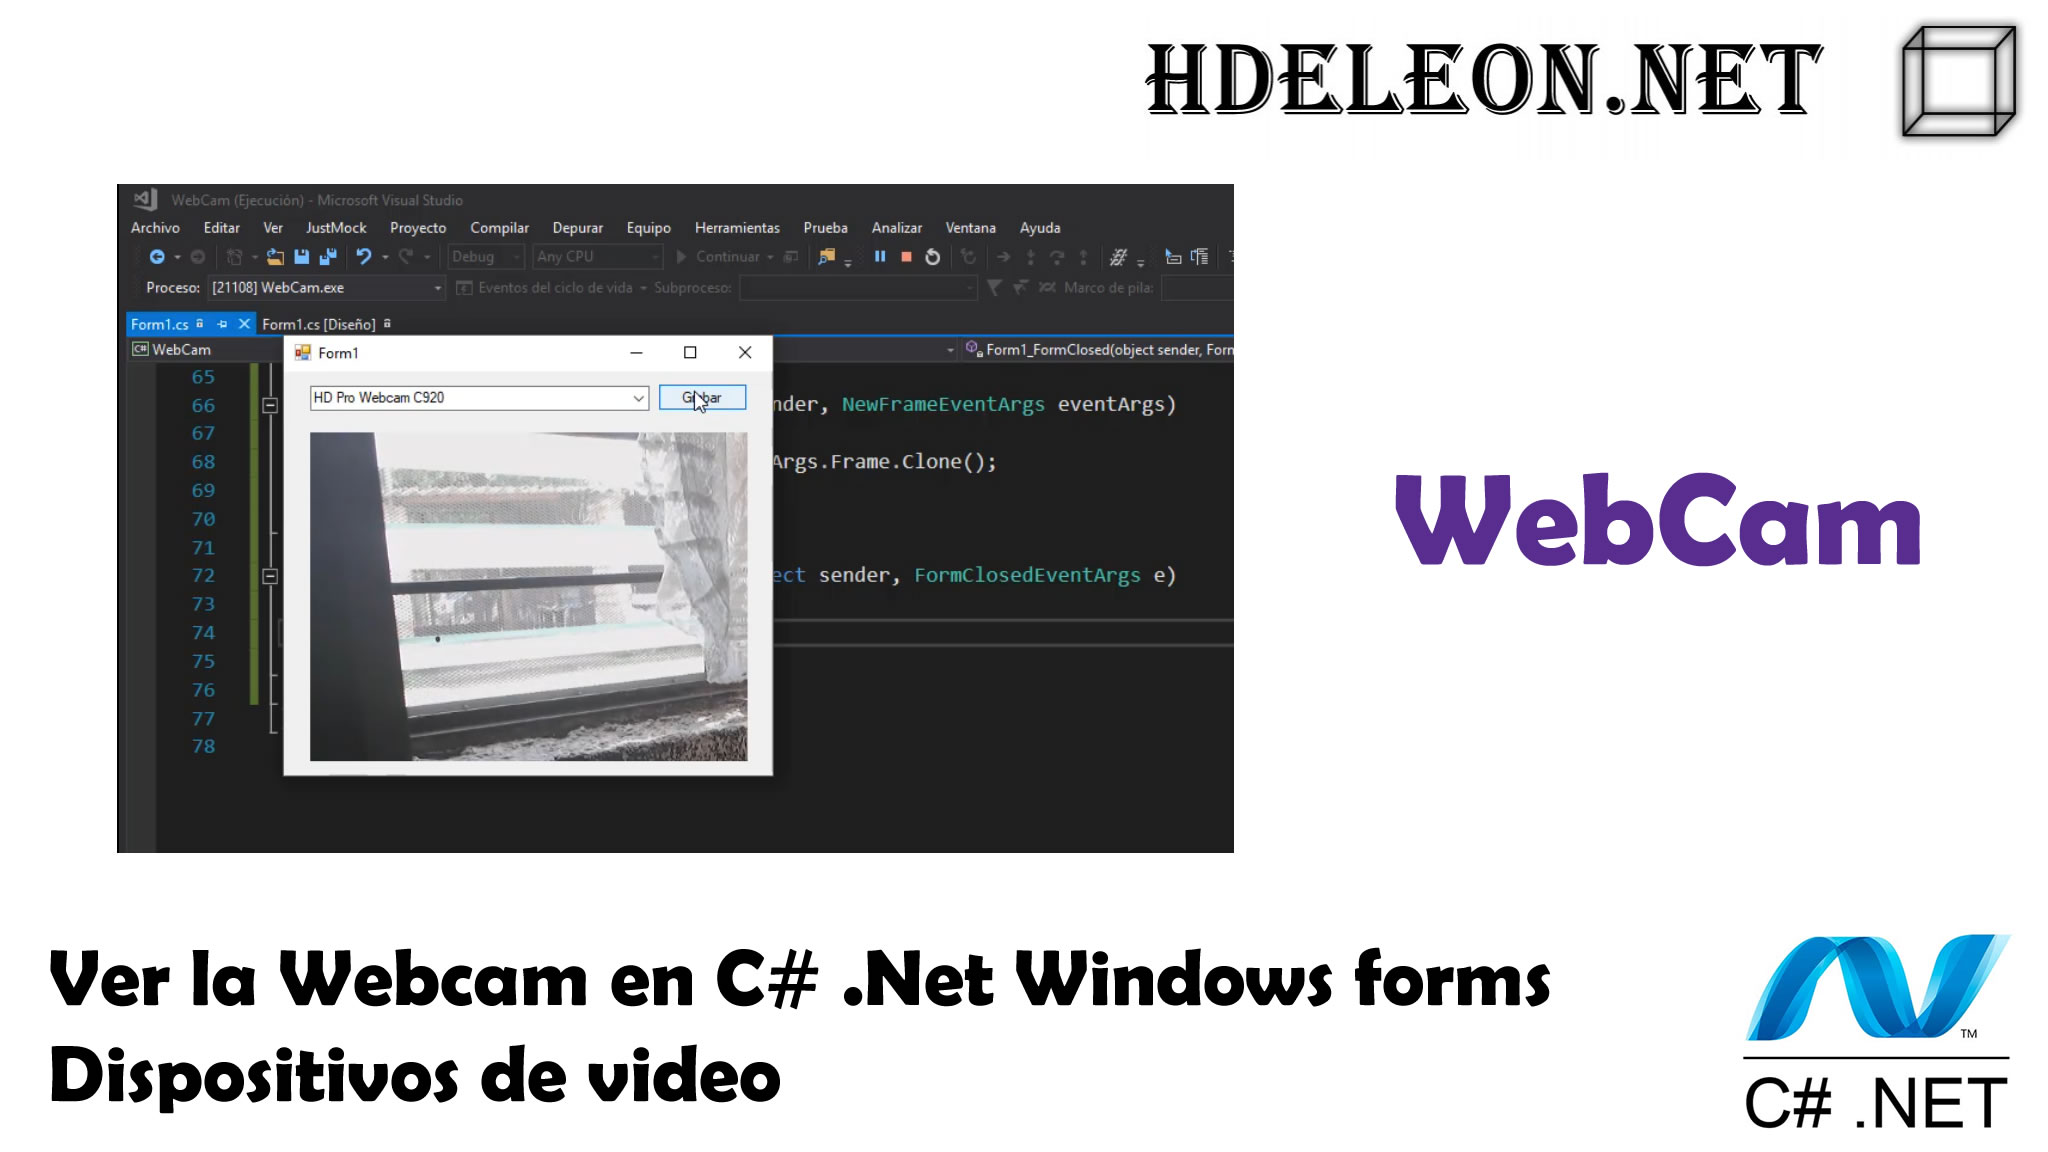 Ver la Webcam en C# .Net Windows forms, dispositivos de video